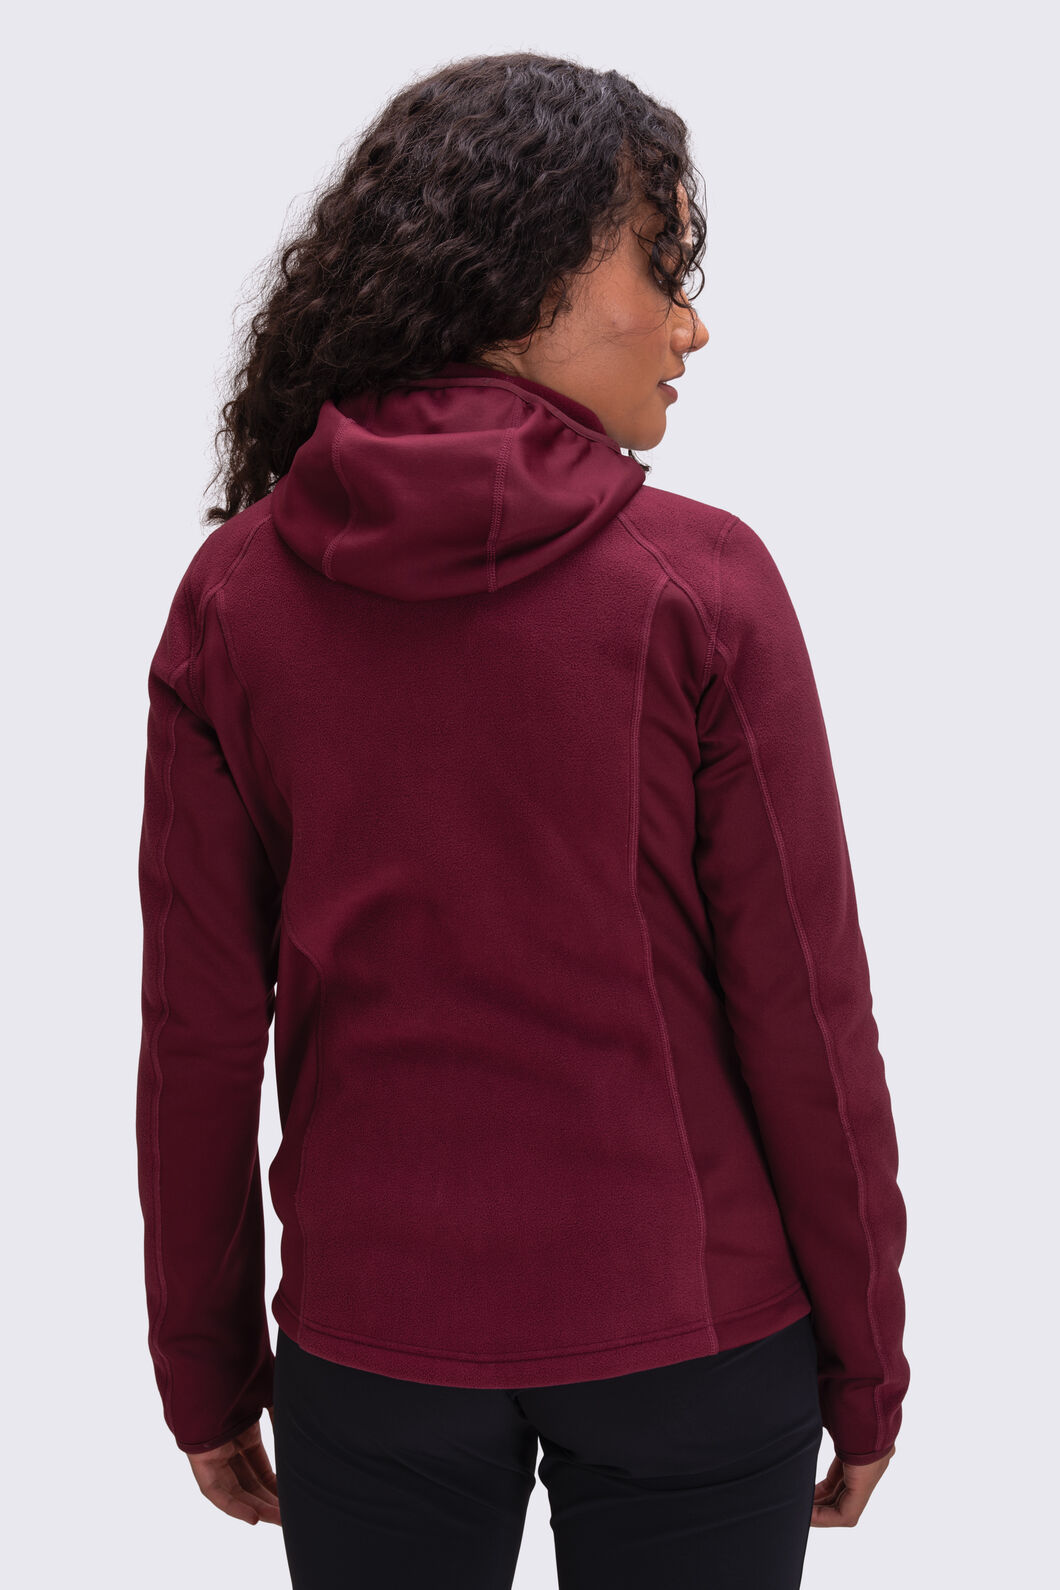 Lululemon women's hooded pullover quarter zip jacket Burgundy Size